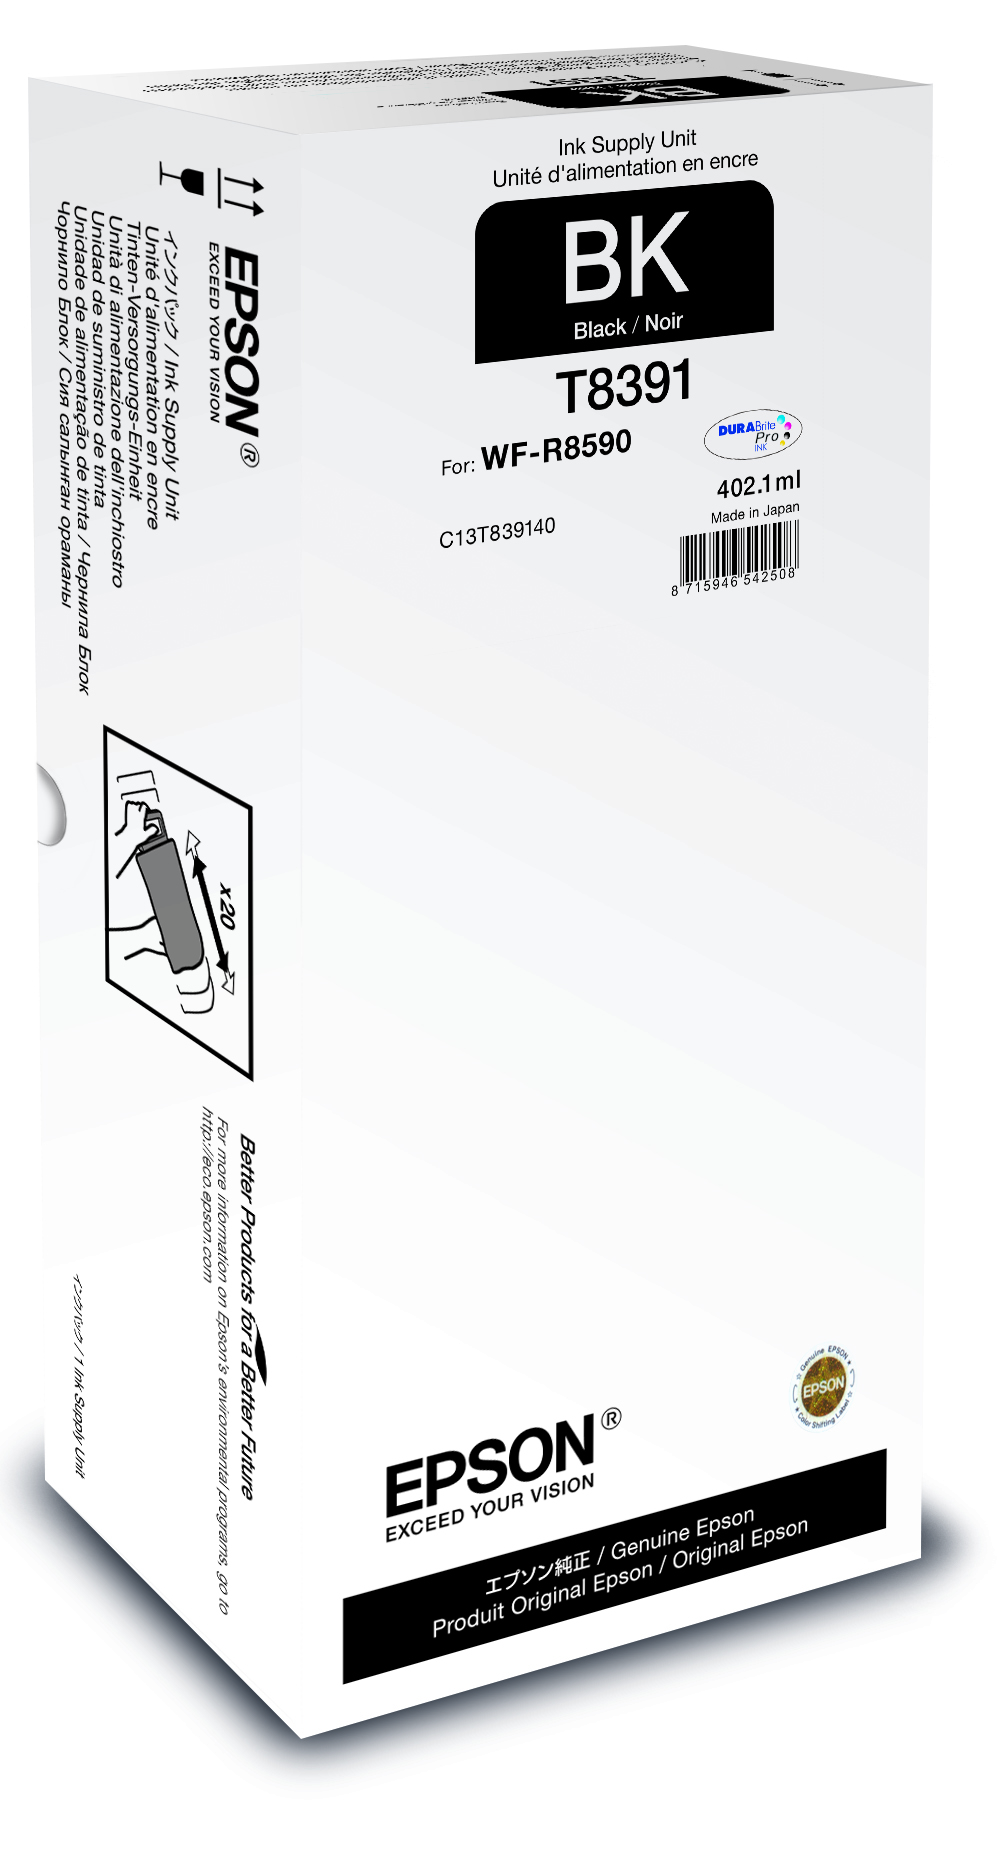 WF-R8590 Black XL Ink Supply Unit